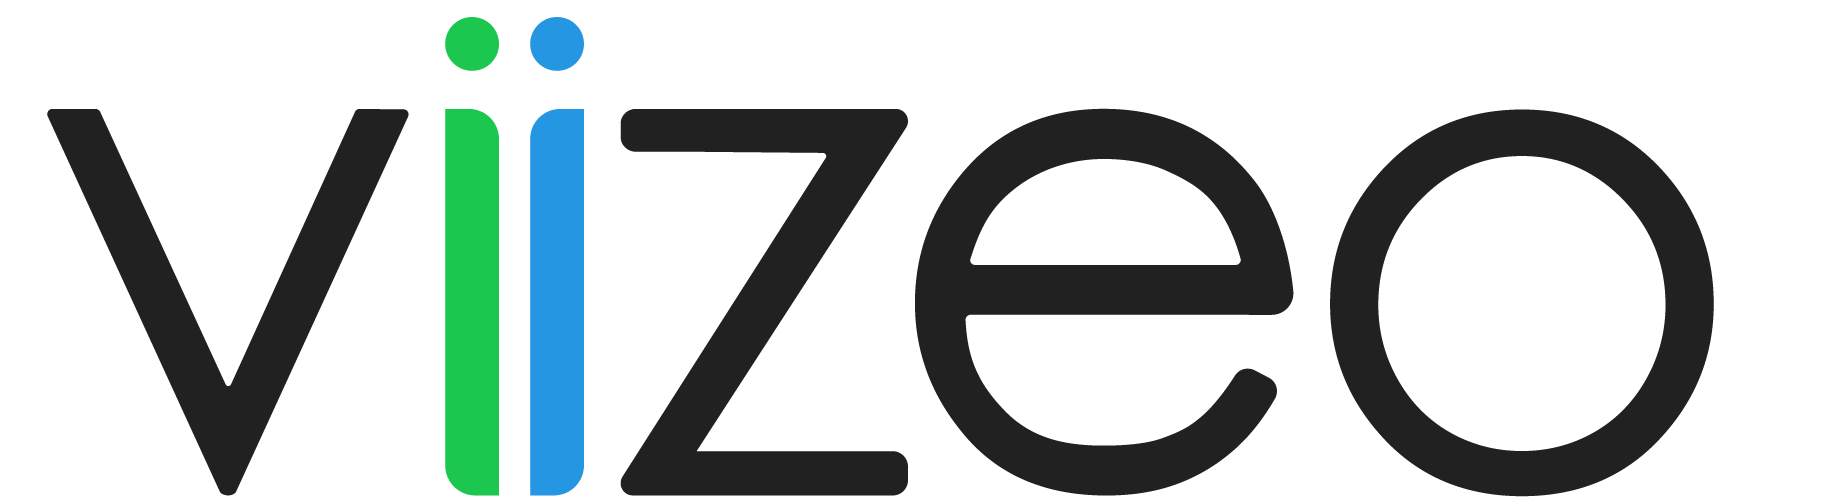 Logo Viizeo